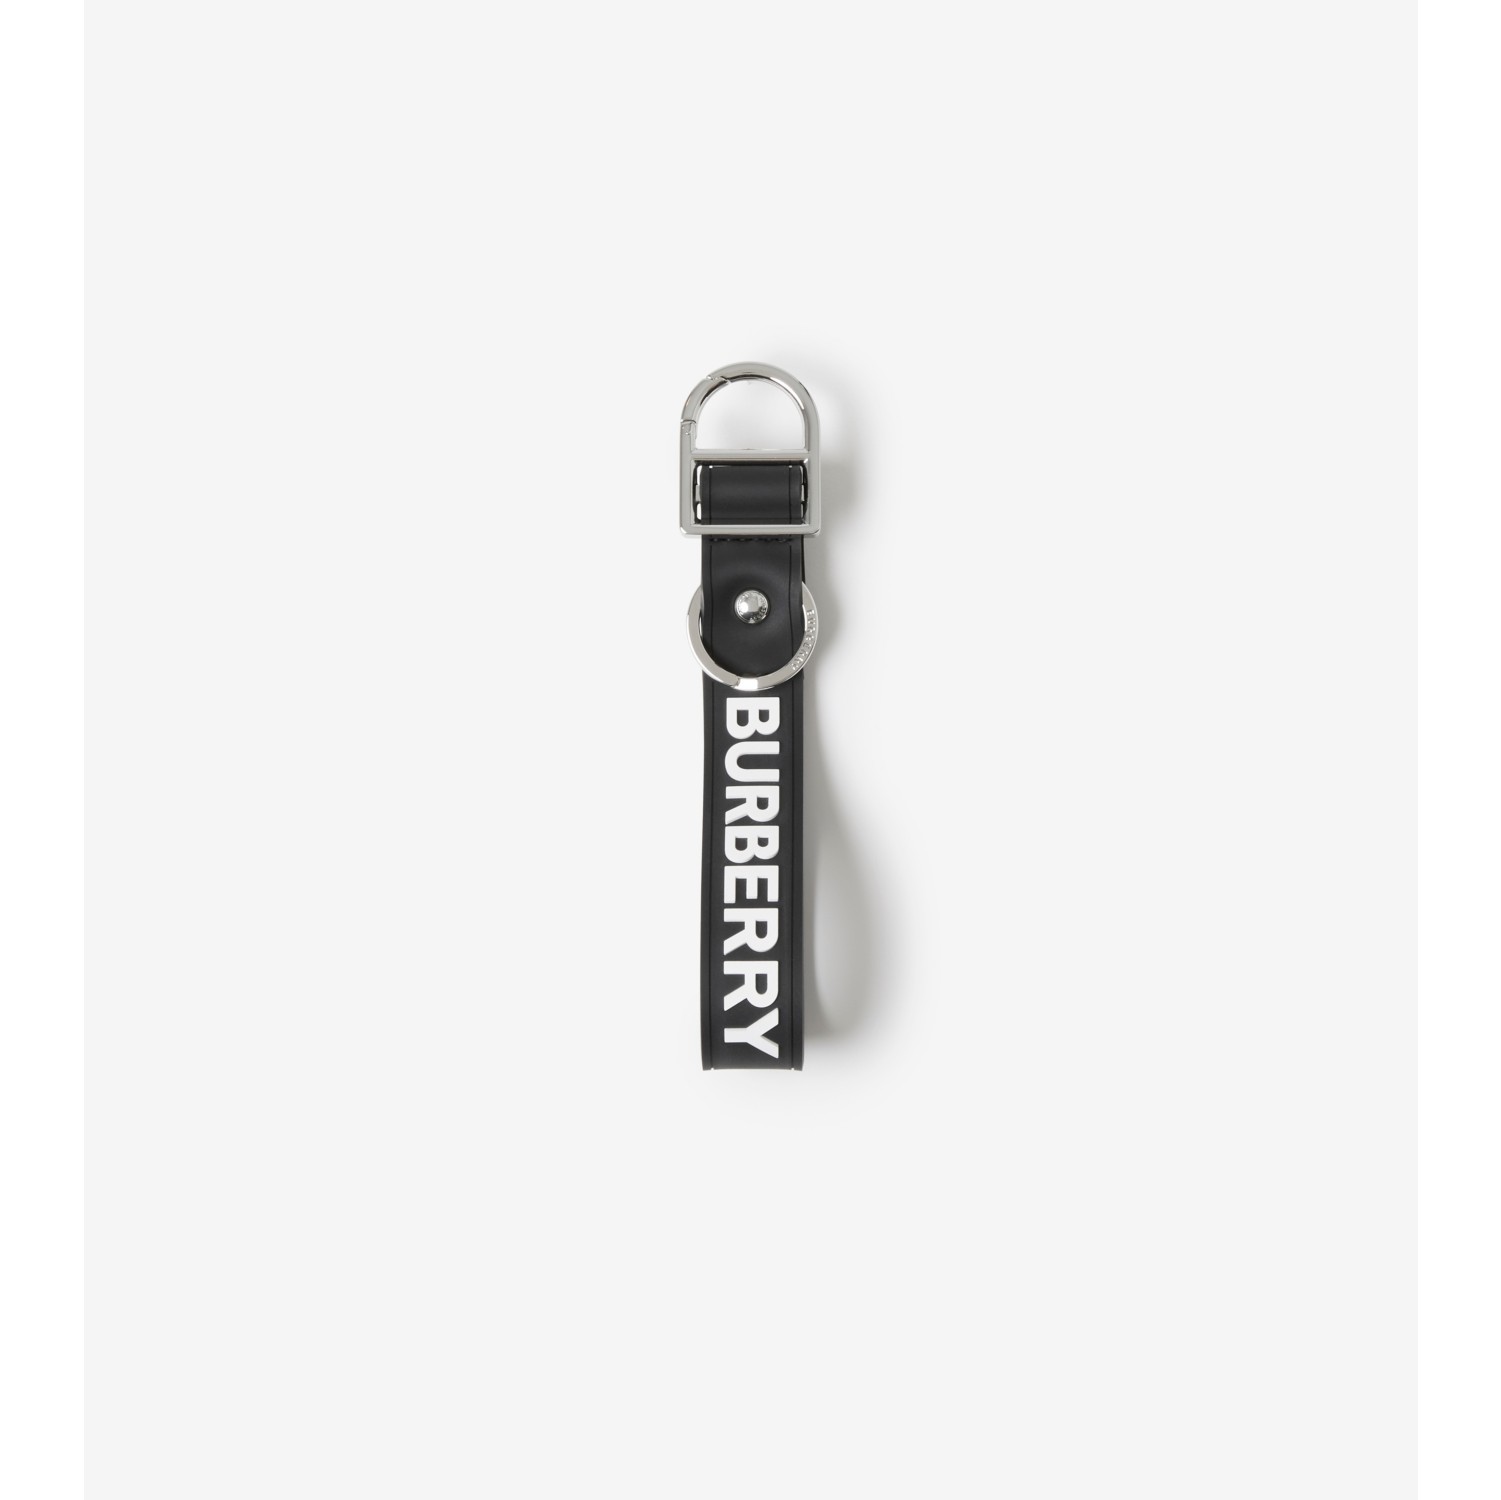 Burberry Keychain 